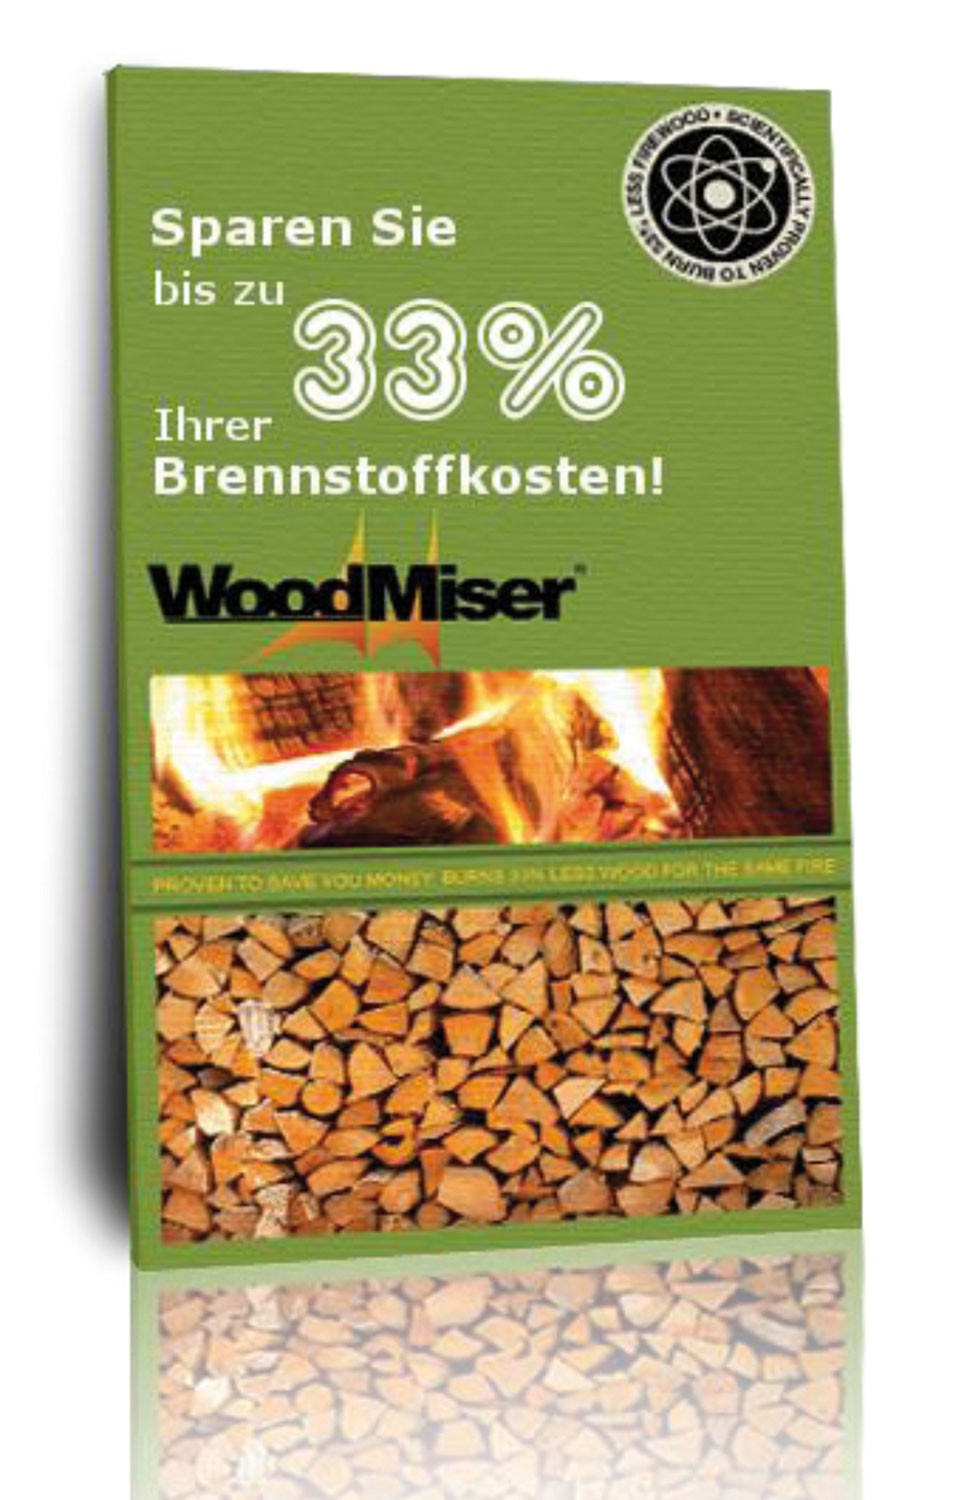 Woodmiser Brennholz sparen